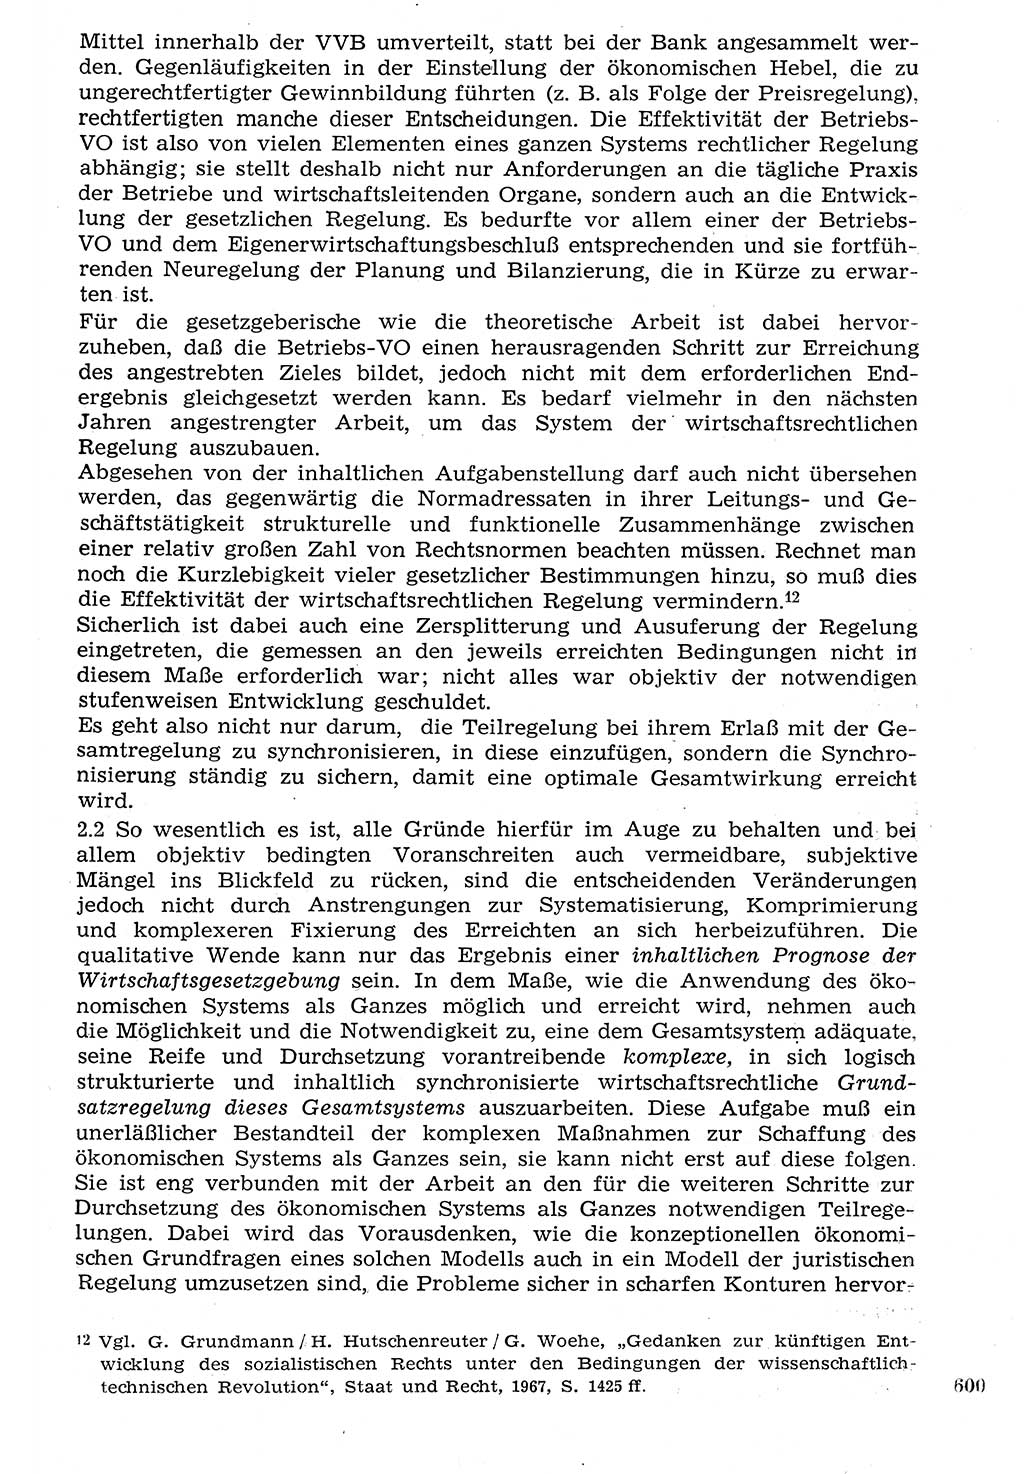 Staat und Recht (StuR), 17. Jahrgang [Deutsche Demokratische Republik (DDR)] 1968, Seite 600 (StuR DDR 1968, S. 600)